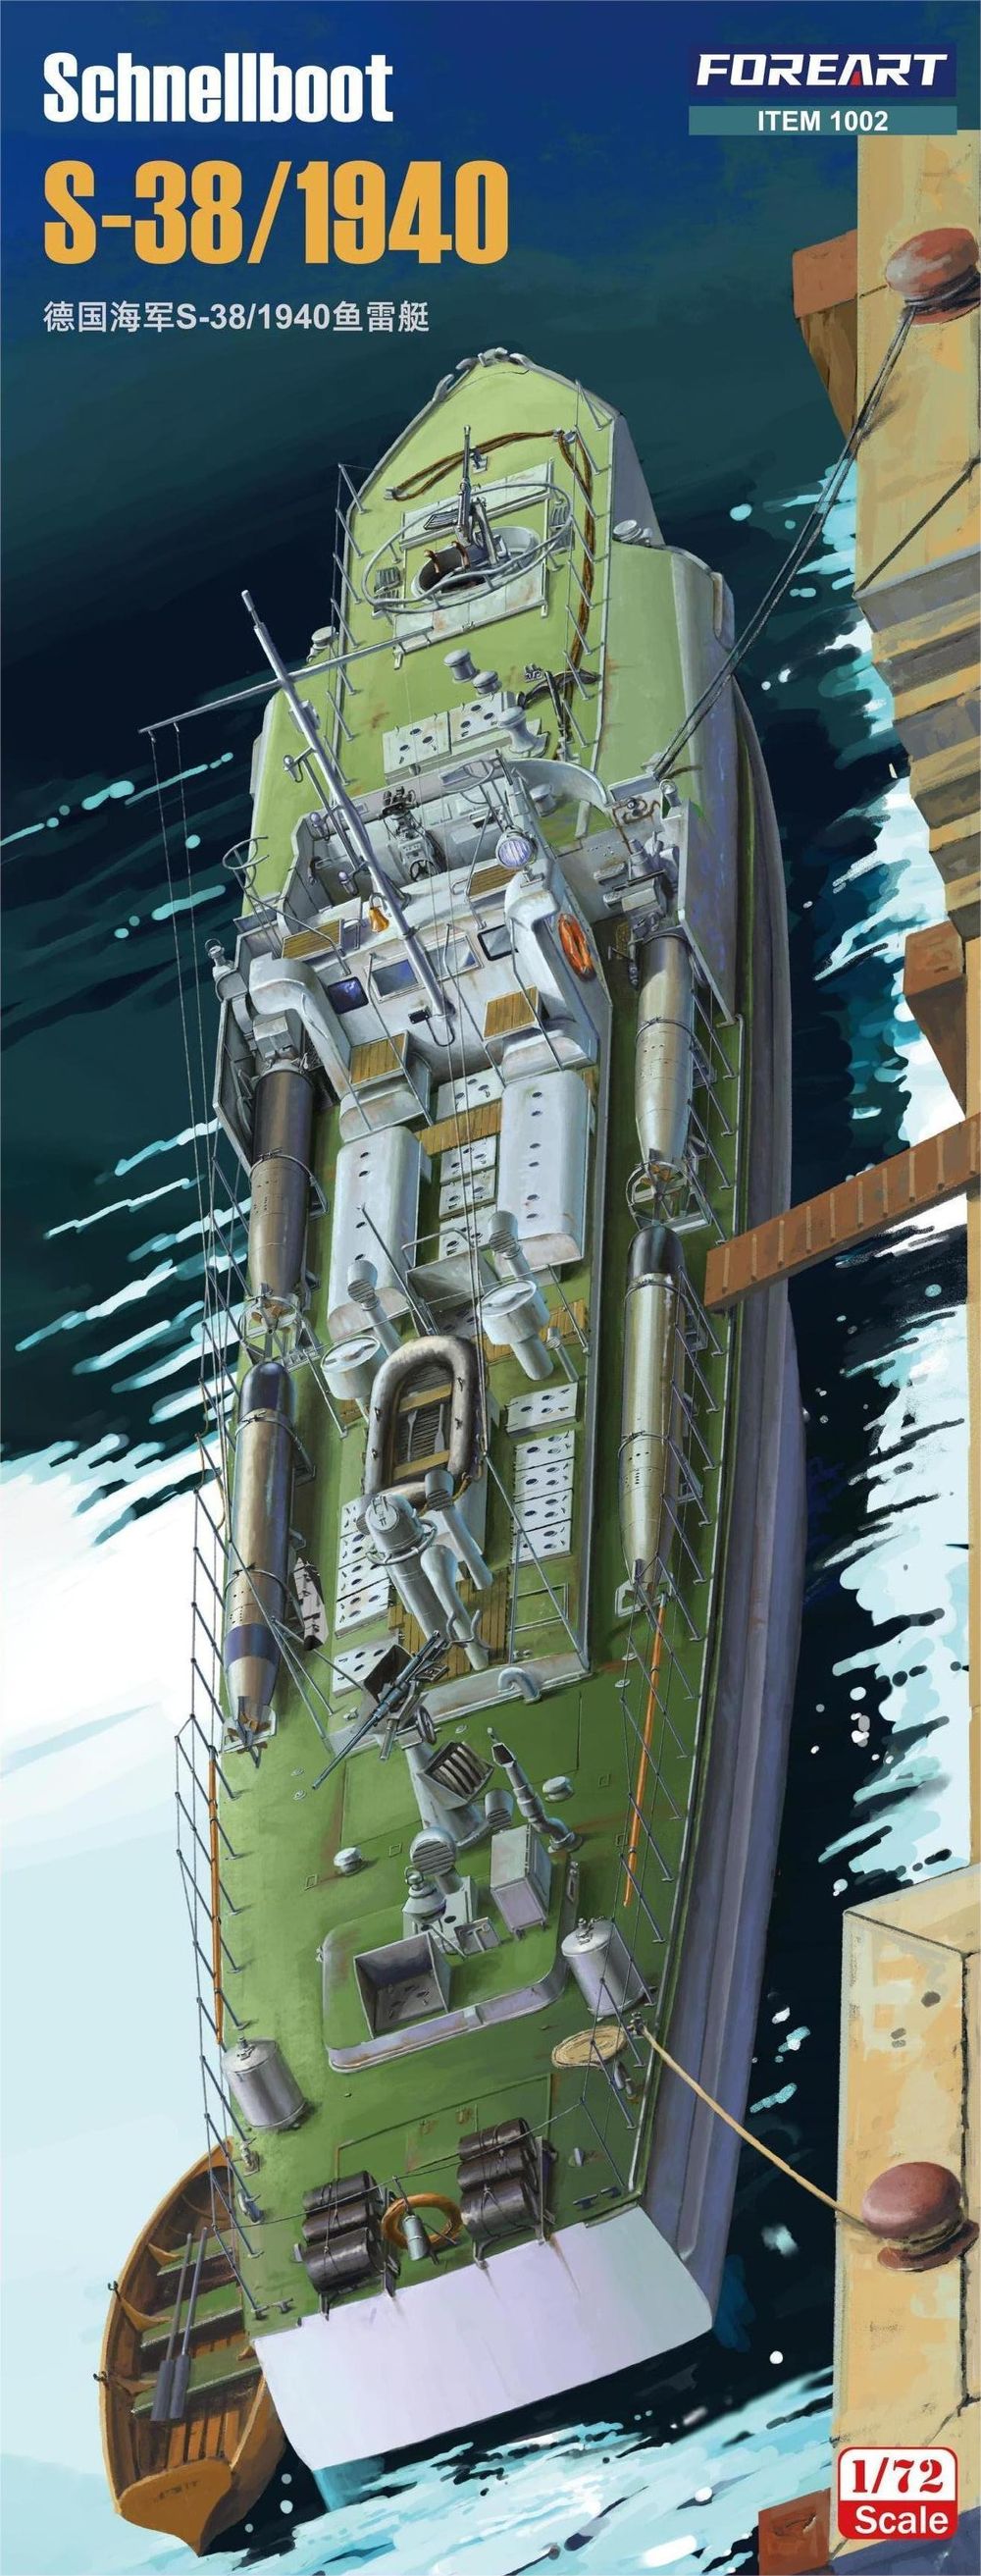 海光模型 FORE 拼装舰船 1002 S38级鱼雷艇1940年型 1/72 模玩/动漫/周边/娃圈三坑/桌游 舰艇/船只/舰船模型 原图主图